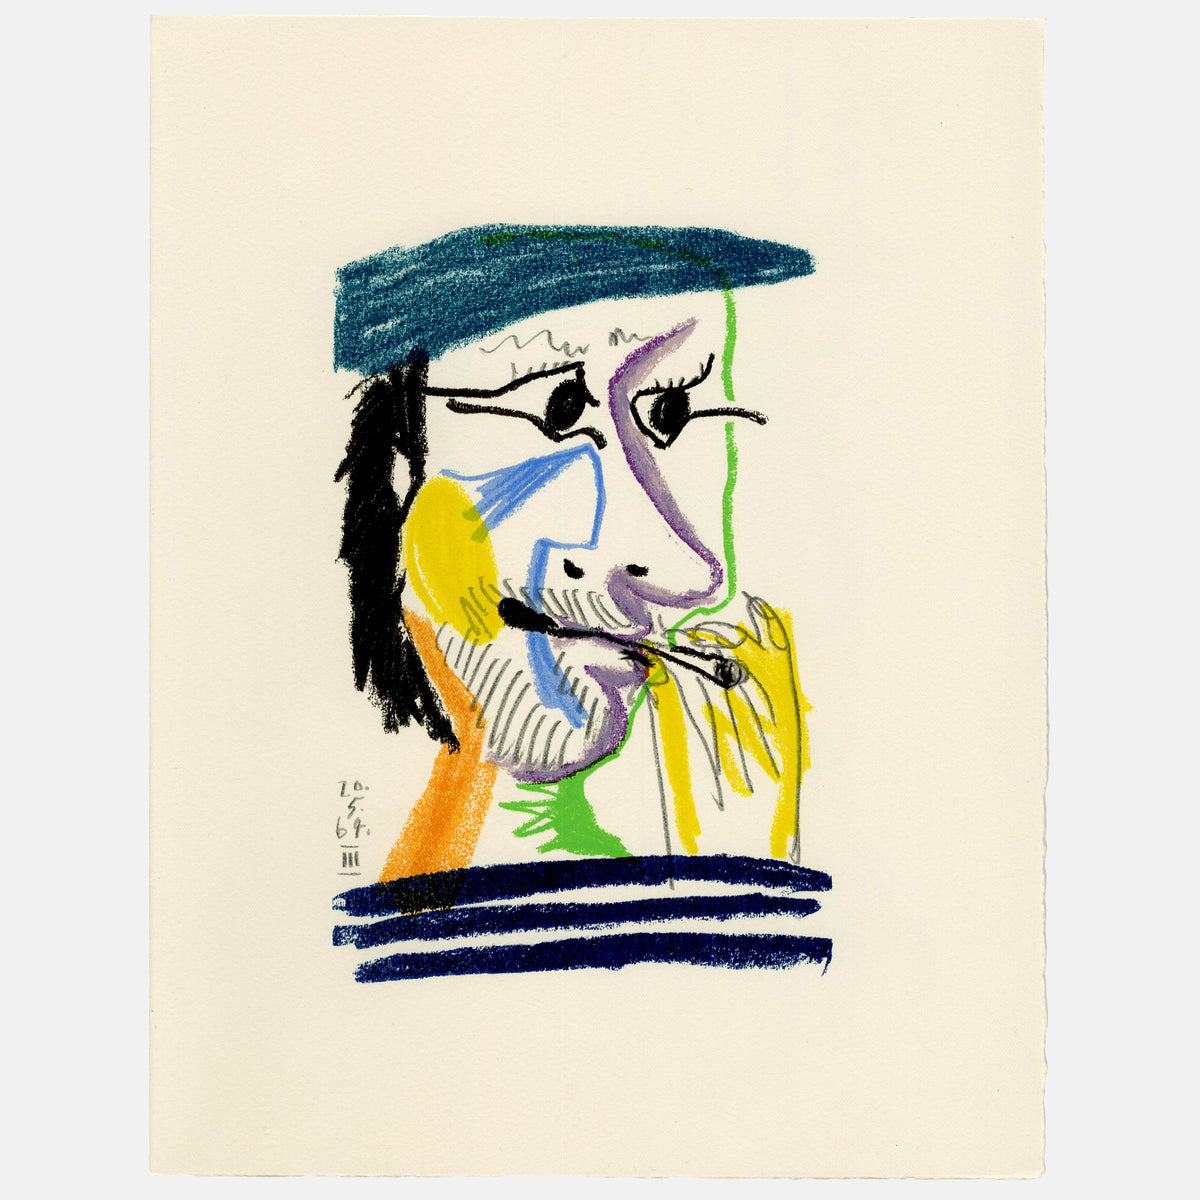 Pablo Picasso - 1970 Lithograph - 12.675 x 9.75&quot;